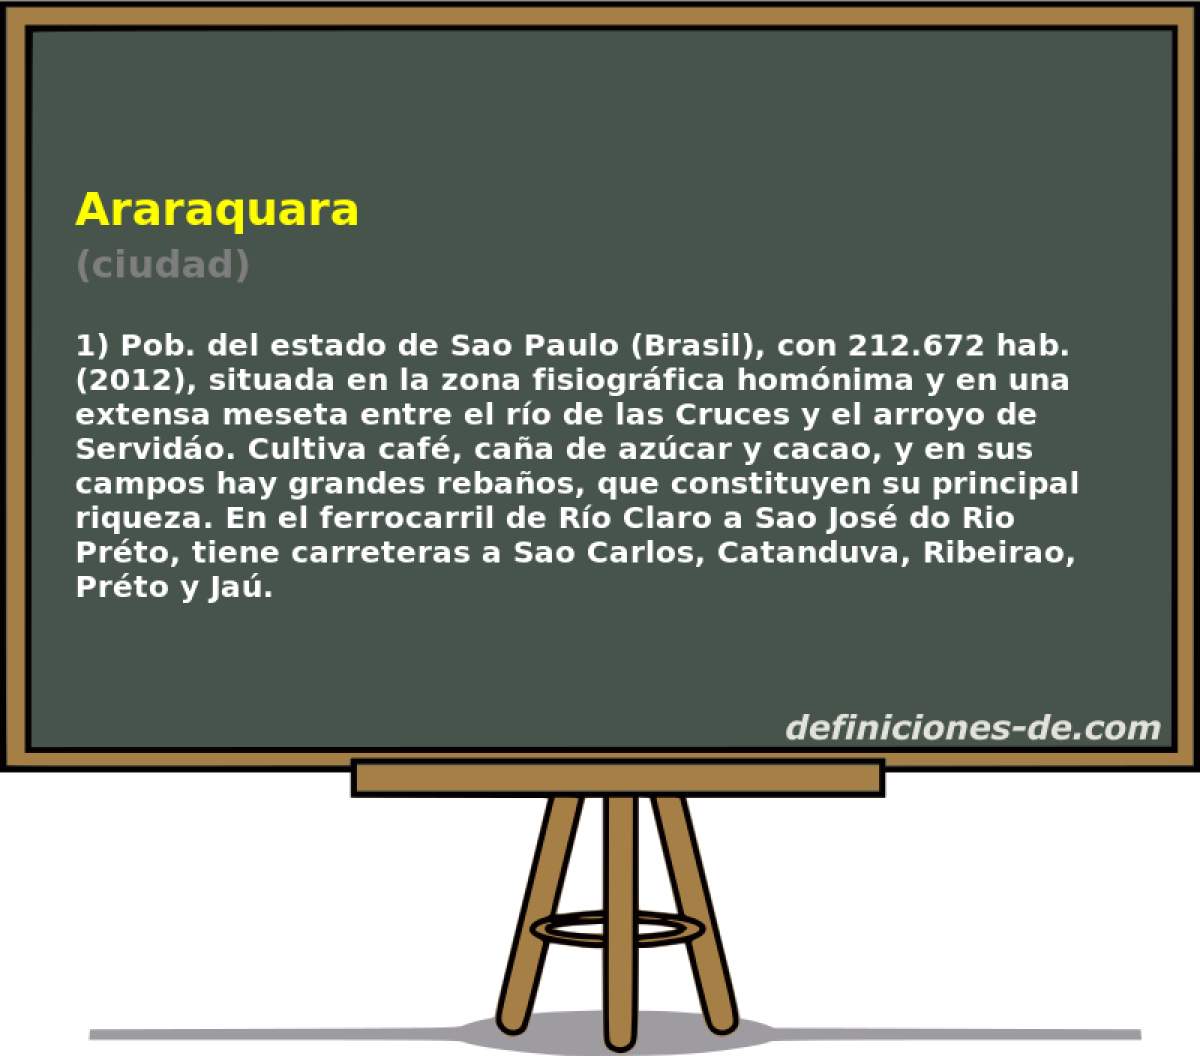 Araraquara (ciudad)